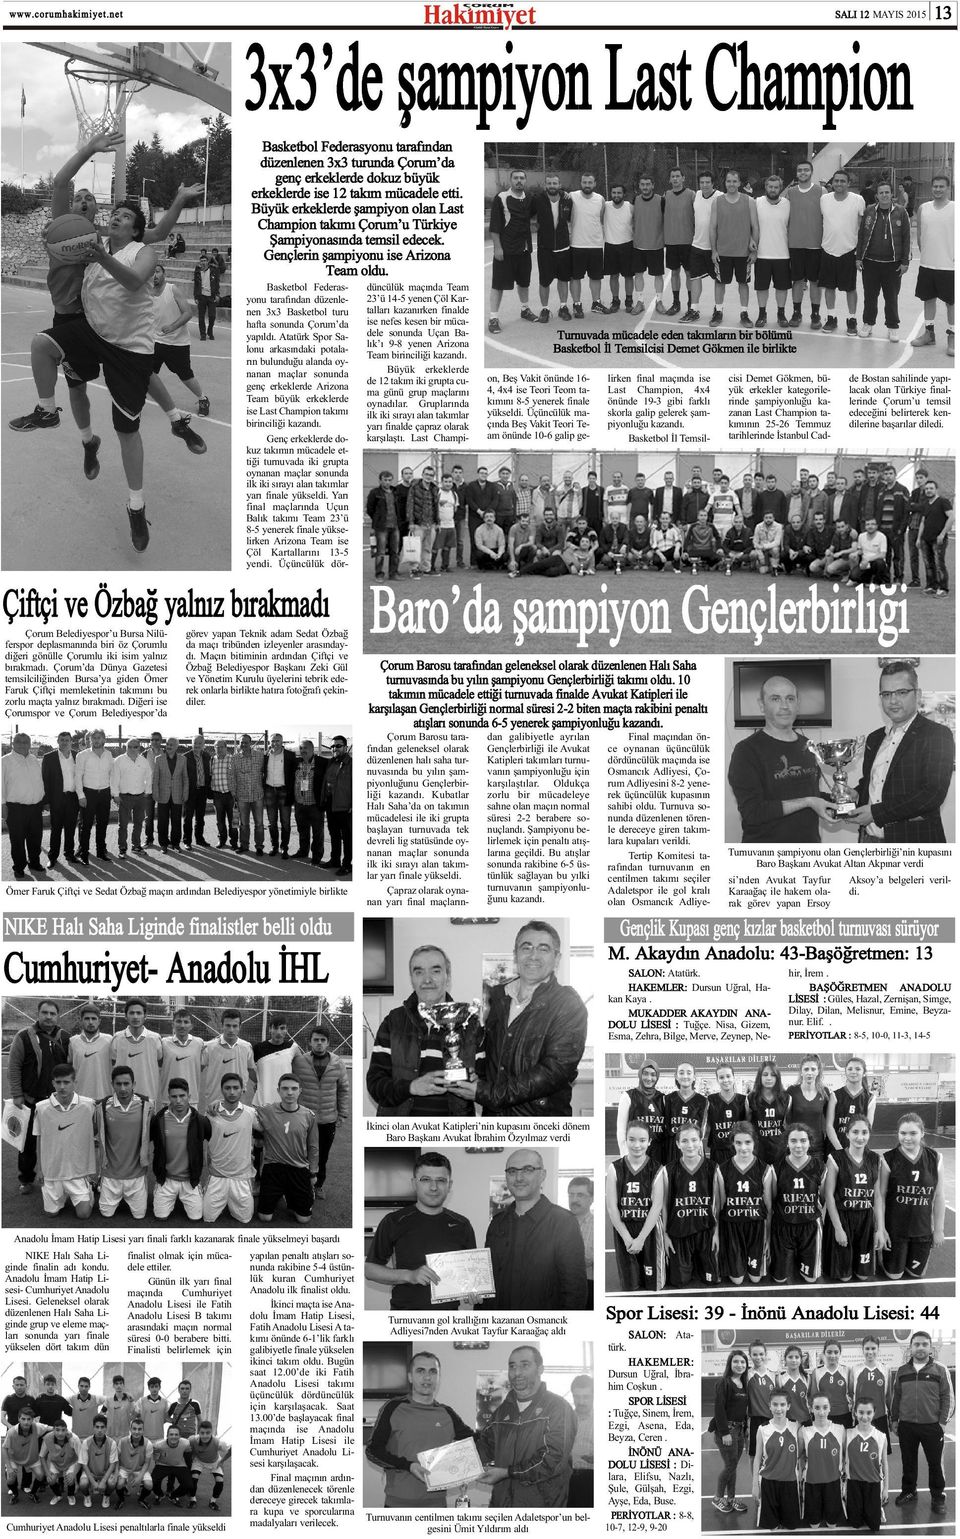 Basketbol Federasyonu tarafýndan düzenlenen 3x3 Basketbol turu hafta sonunda Çorum da yapýldý.